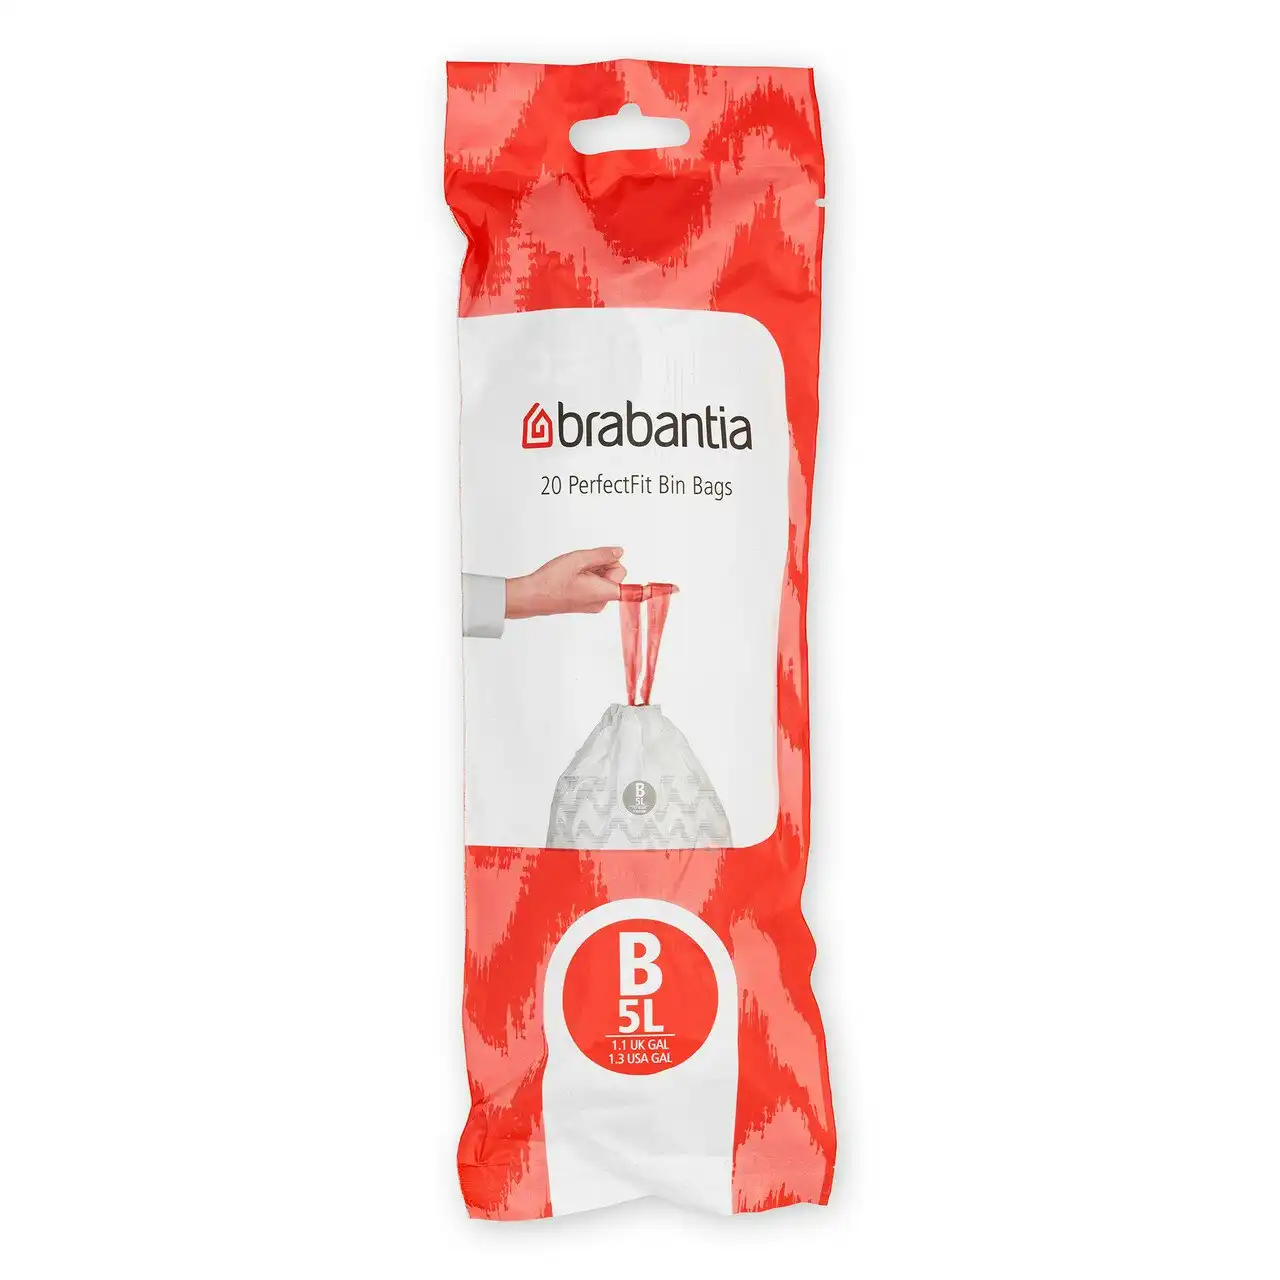 Brabantia Bin Liners   Code B   5 Litre   20 Waste Bags